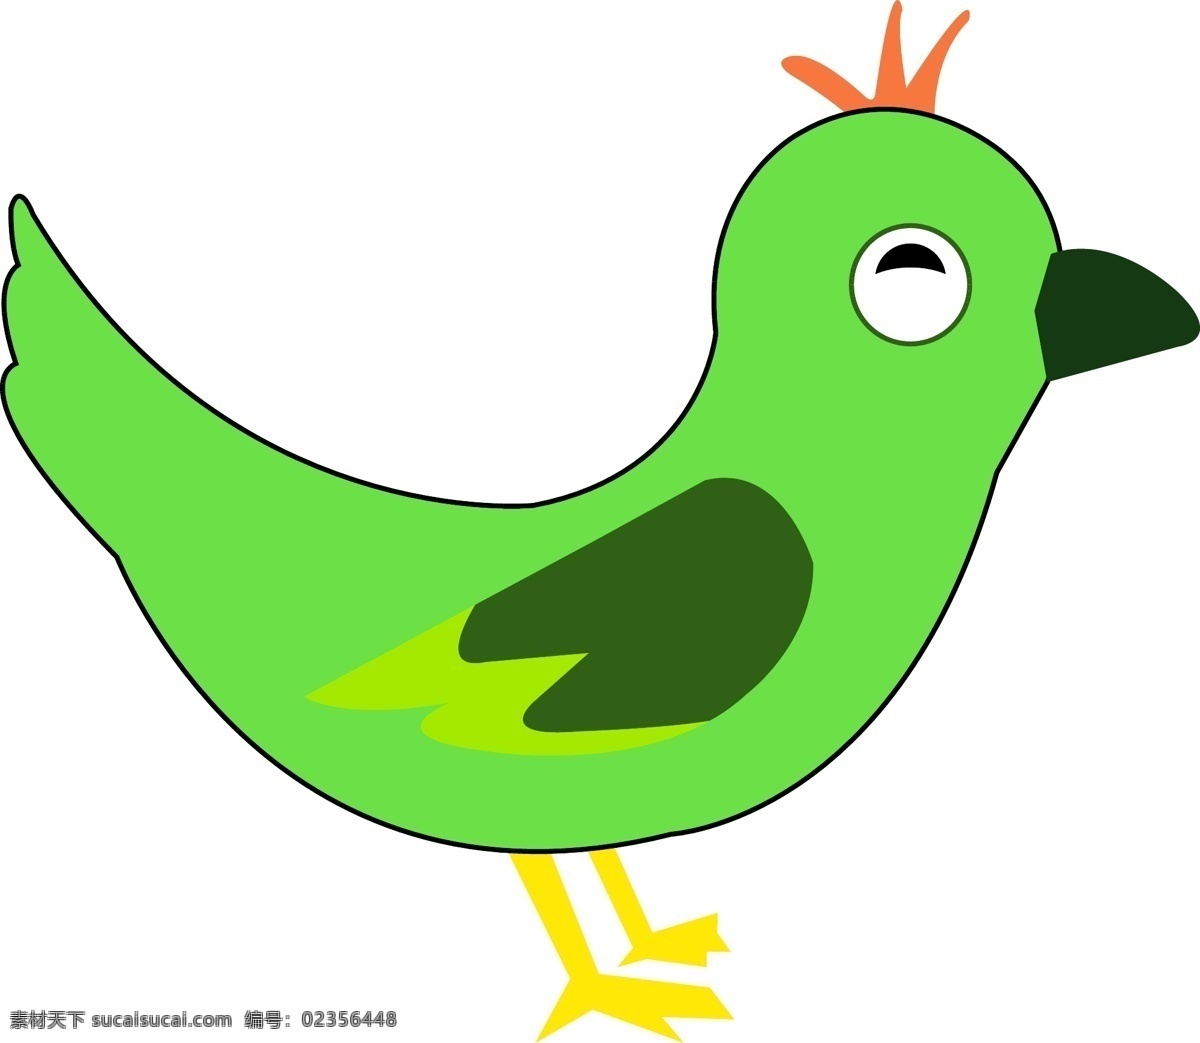 可爱 卡通 小鸟 免 抠 卡通的小鸟 可爱的小鸟 绿色的小鸟 黄色的小嘴 简约的图形 简笔的小鸟 简单的小鸟